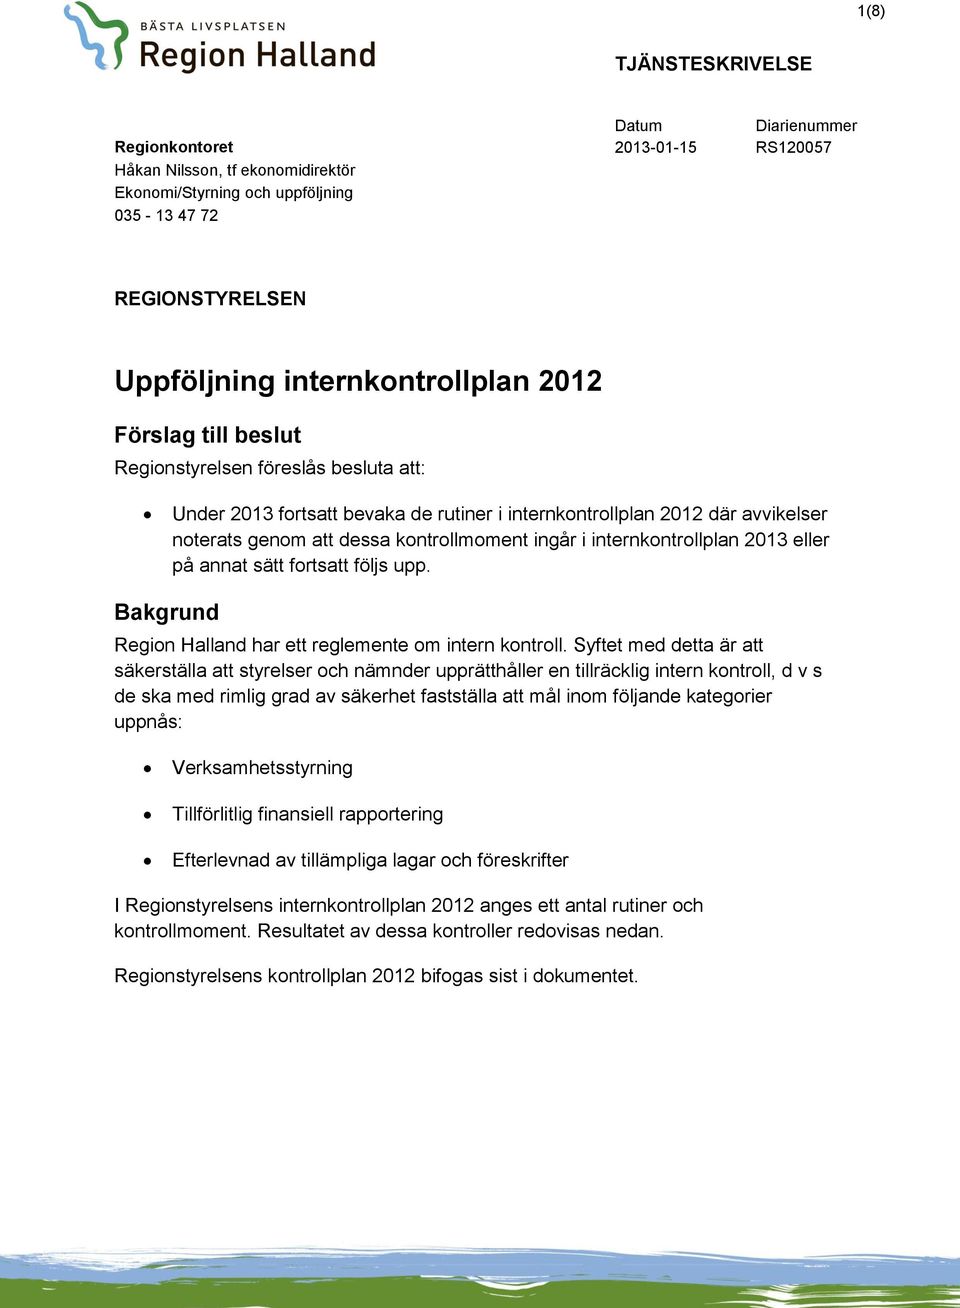 kontrollmoment ingår i internkontrollplan 2013 eller på annat sätt fortsatt följs upp. Bakgrund Region Halland har ett reglemente om intern kontroll.